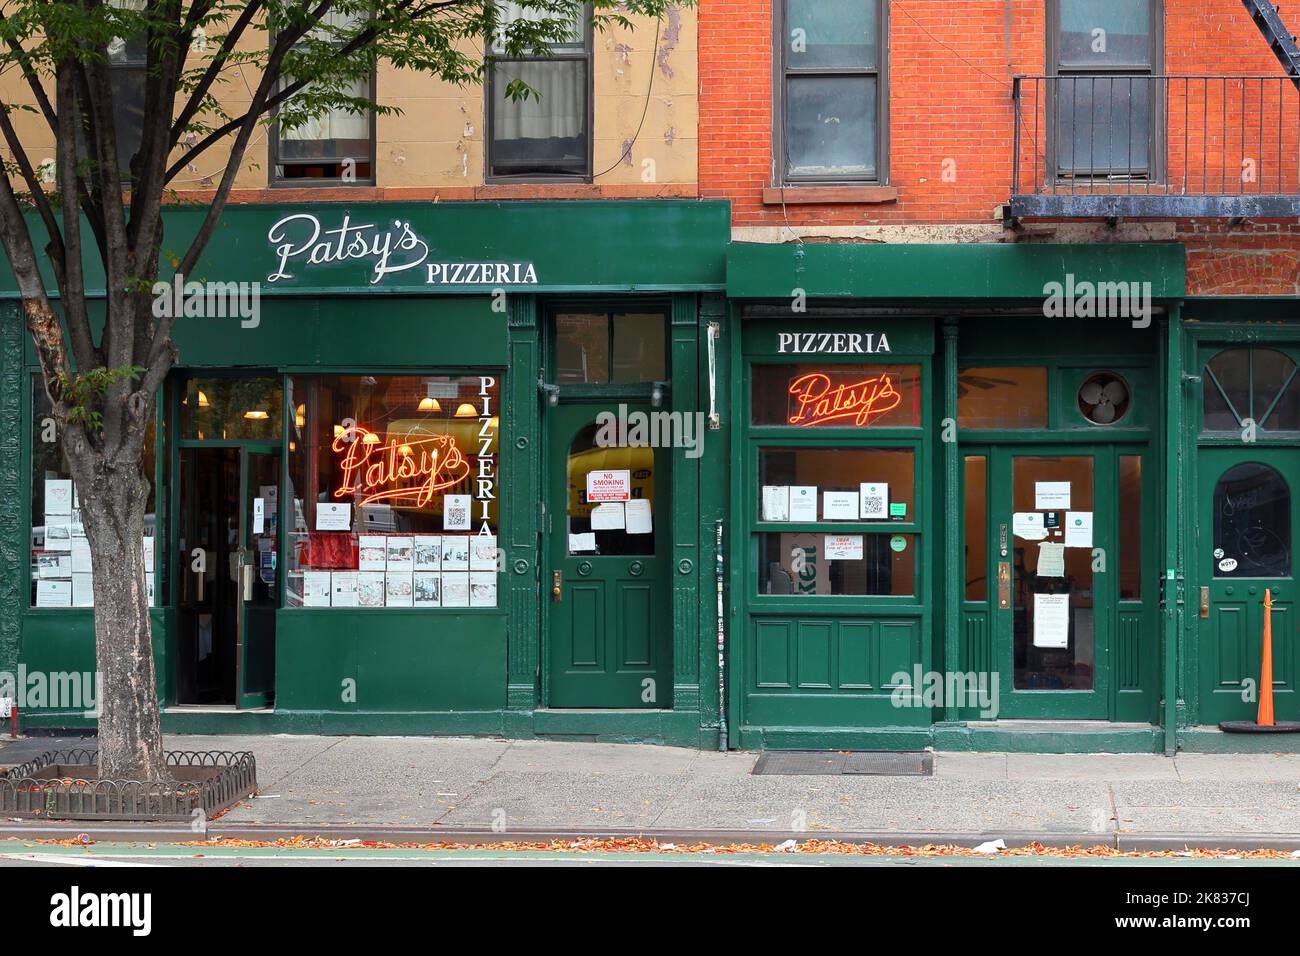 Patsy's Pizzeria, 2287 1st Ave., Nueva York, Nueva York, Nueva York, Nueva York, foto de un restaurante de pizza al carbón en el barrio de East Harlem de Manhattan. Foto de stock